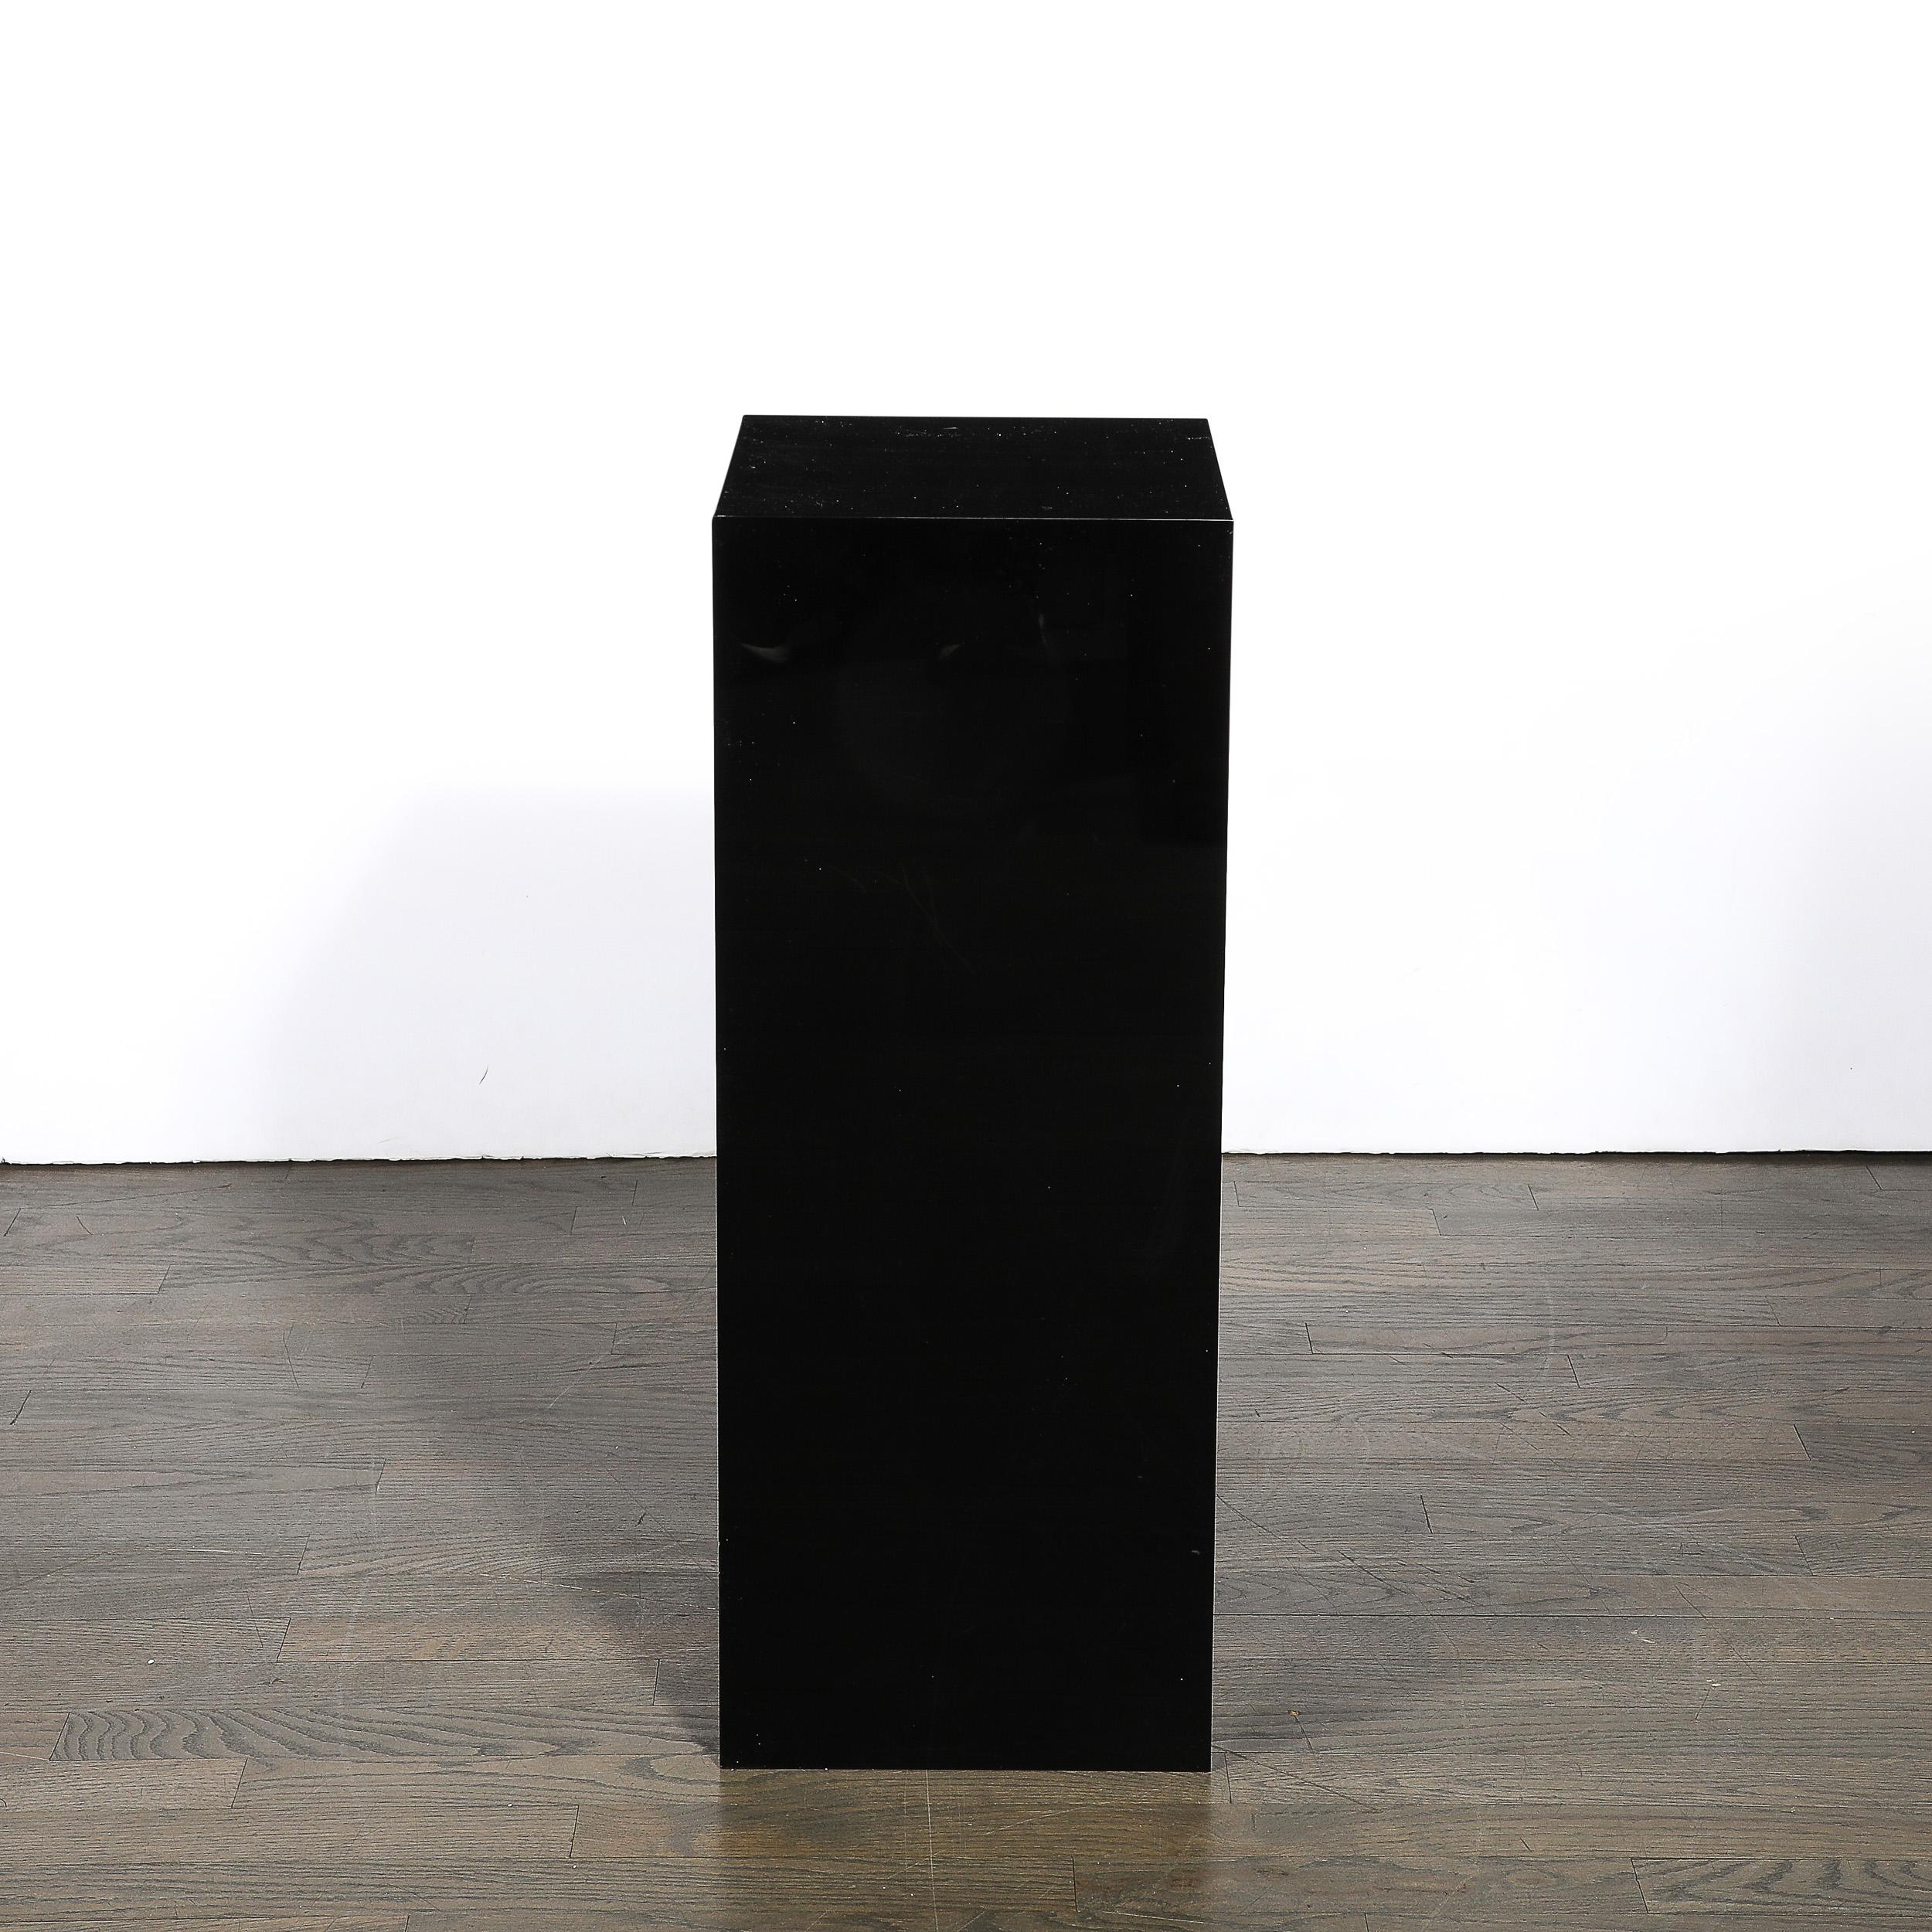 Dieser minimalistische und materiell hervorragende Mid-Century Modernist Rectilinear Black Acrylic Pedestal stammt aus den Vereinigten Staaten aus der zweiten Hälfte des 20. Jahrhunderts. Die geradlinige Komposition besteht aus glänzendem schwarzem